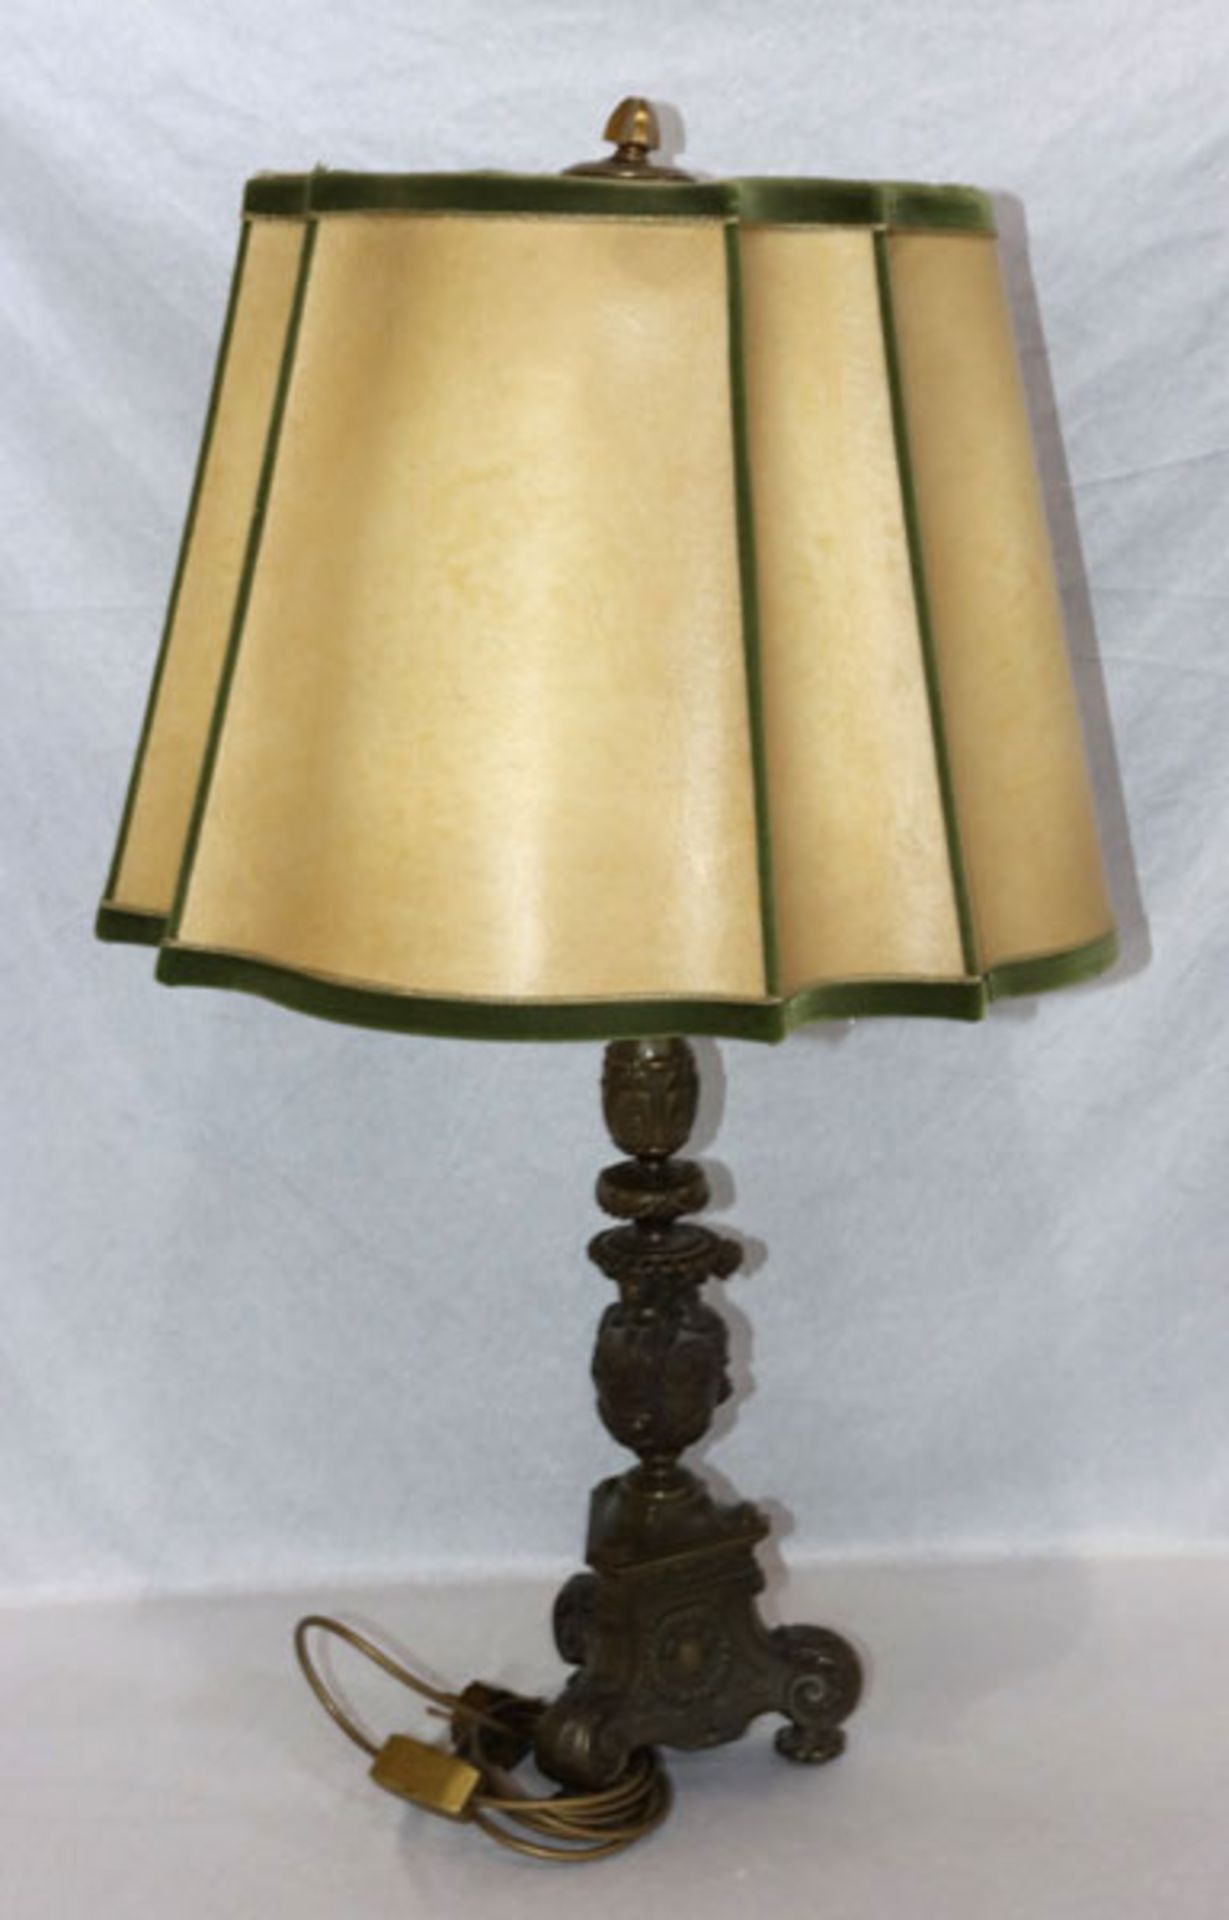 Tischlampe mit reliefiertem Lampenfuß, Bronze ?, mit beige/grünem Schirm, H 86 cm, D 48 cm, teils